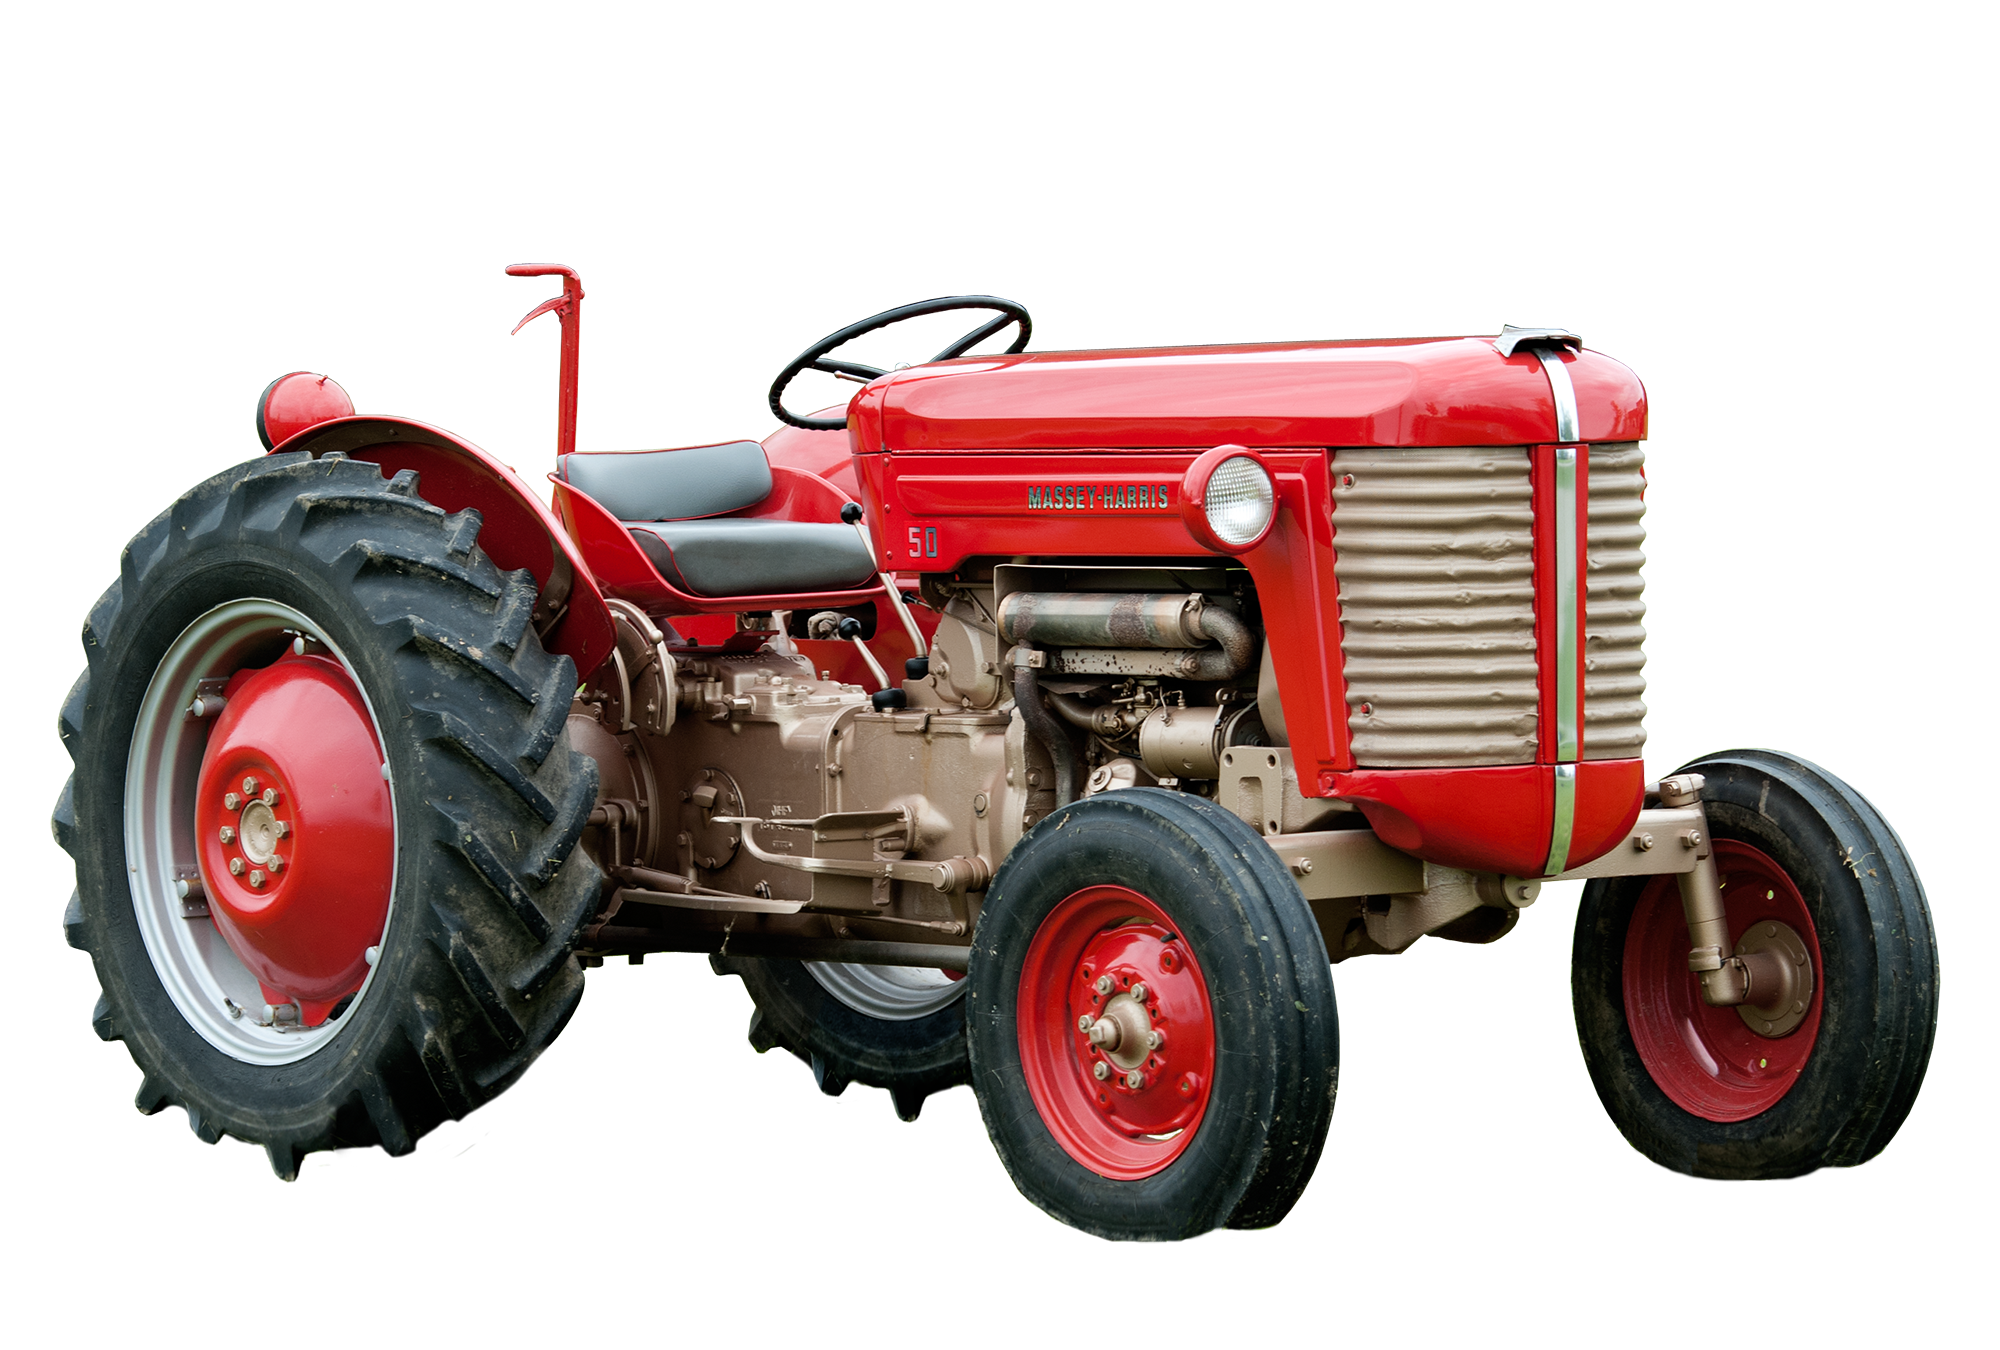 Agricultura Red Imagen PNG del tractorn de alta calidad